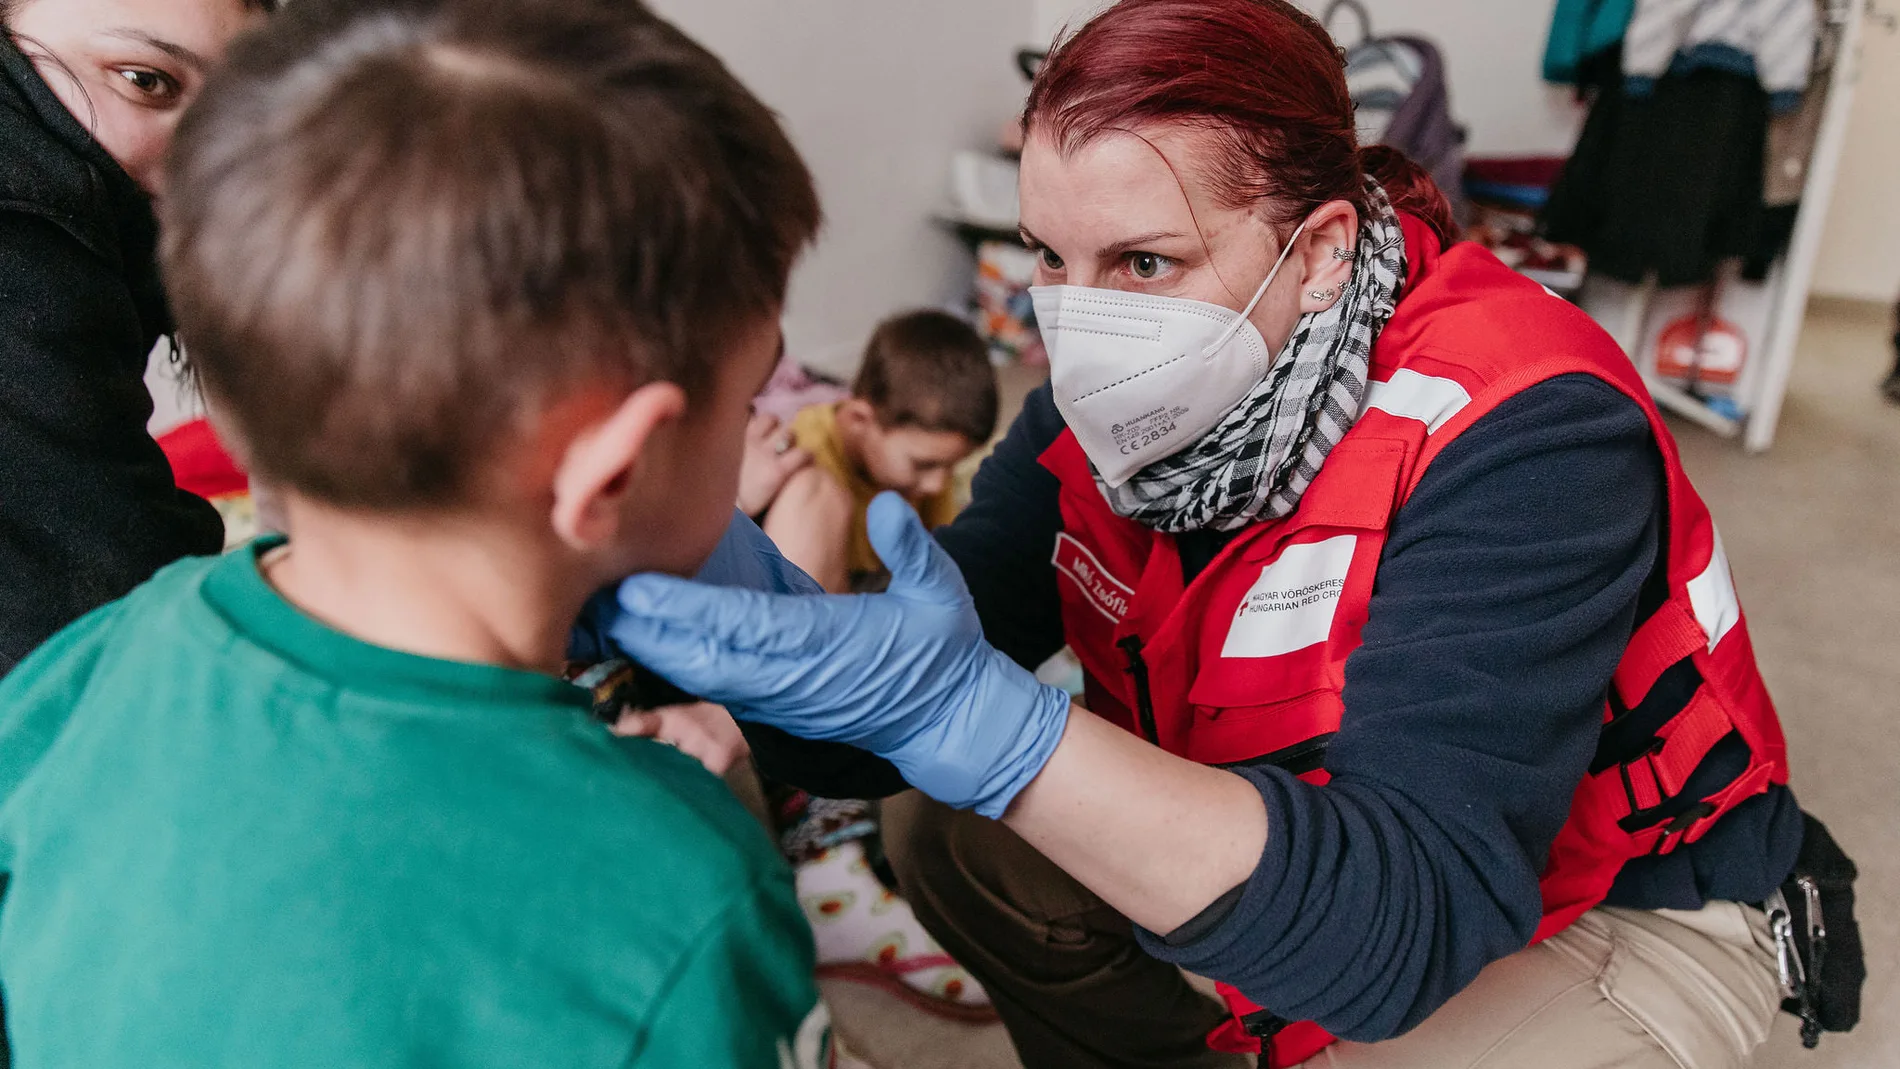 Voluntarios de Cruz Roja atienden a pequeños recién llegados a España